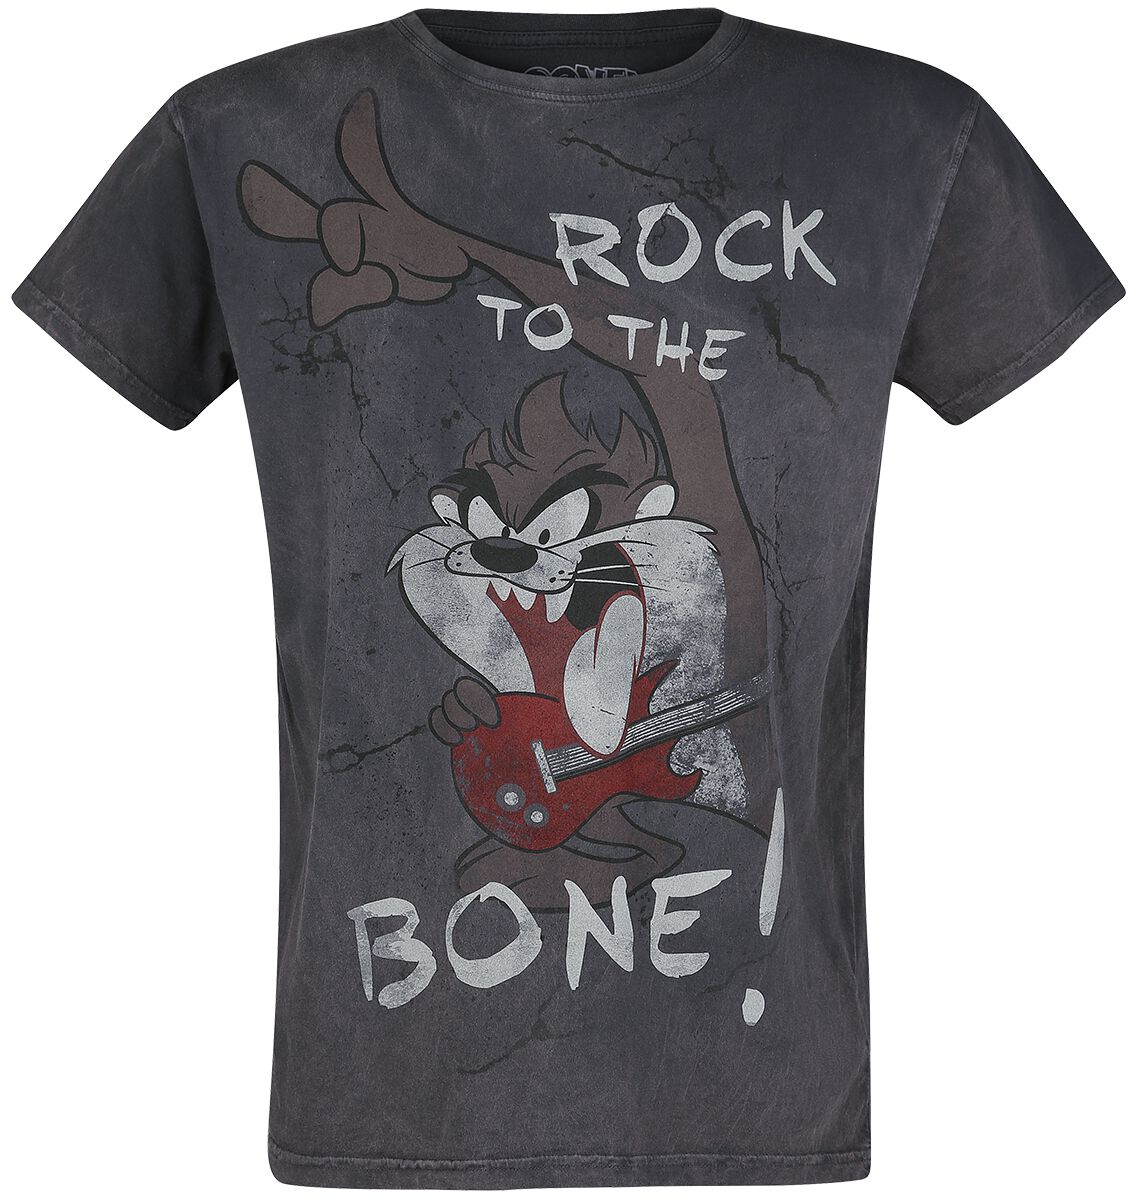 Looney Tunes T-Shirt - Tasmanian Devil - Rock To The Bone! - S bis 4XL - für Männer - Größe 4XL - grau  - EMP exklusives Merchandise!